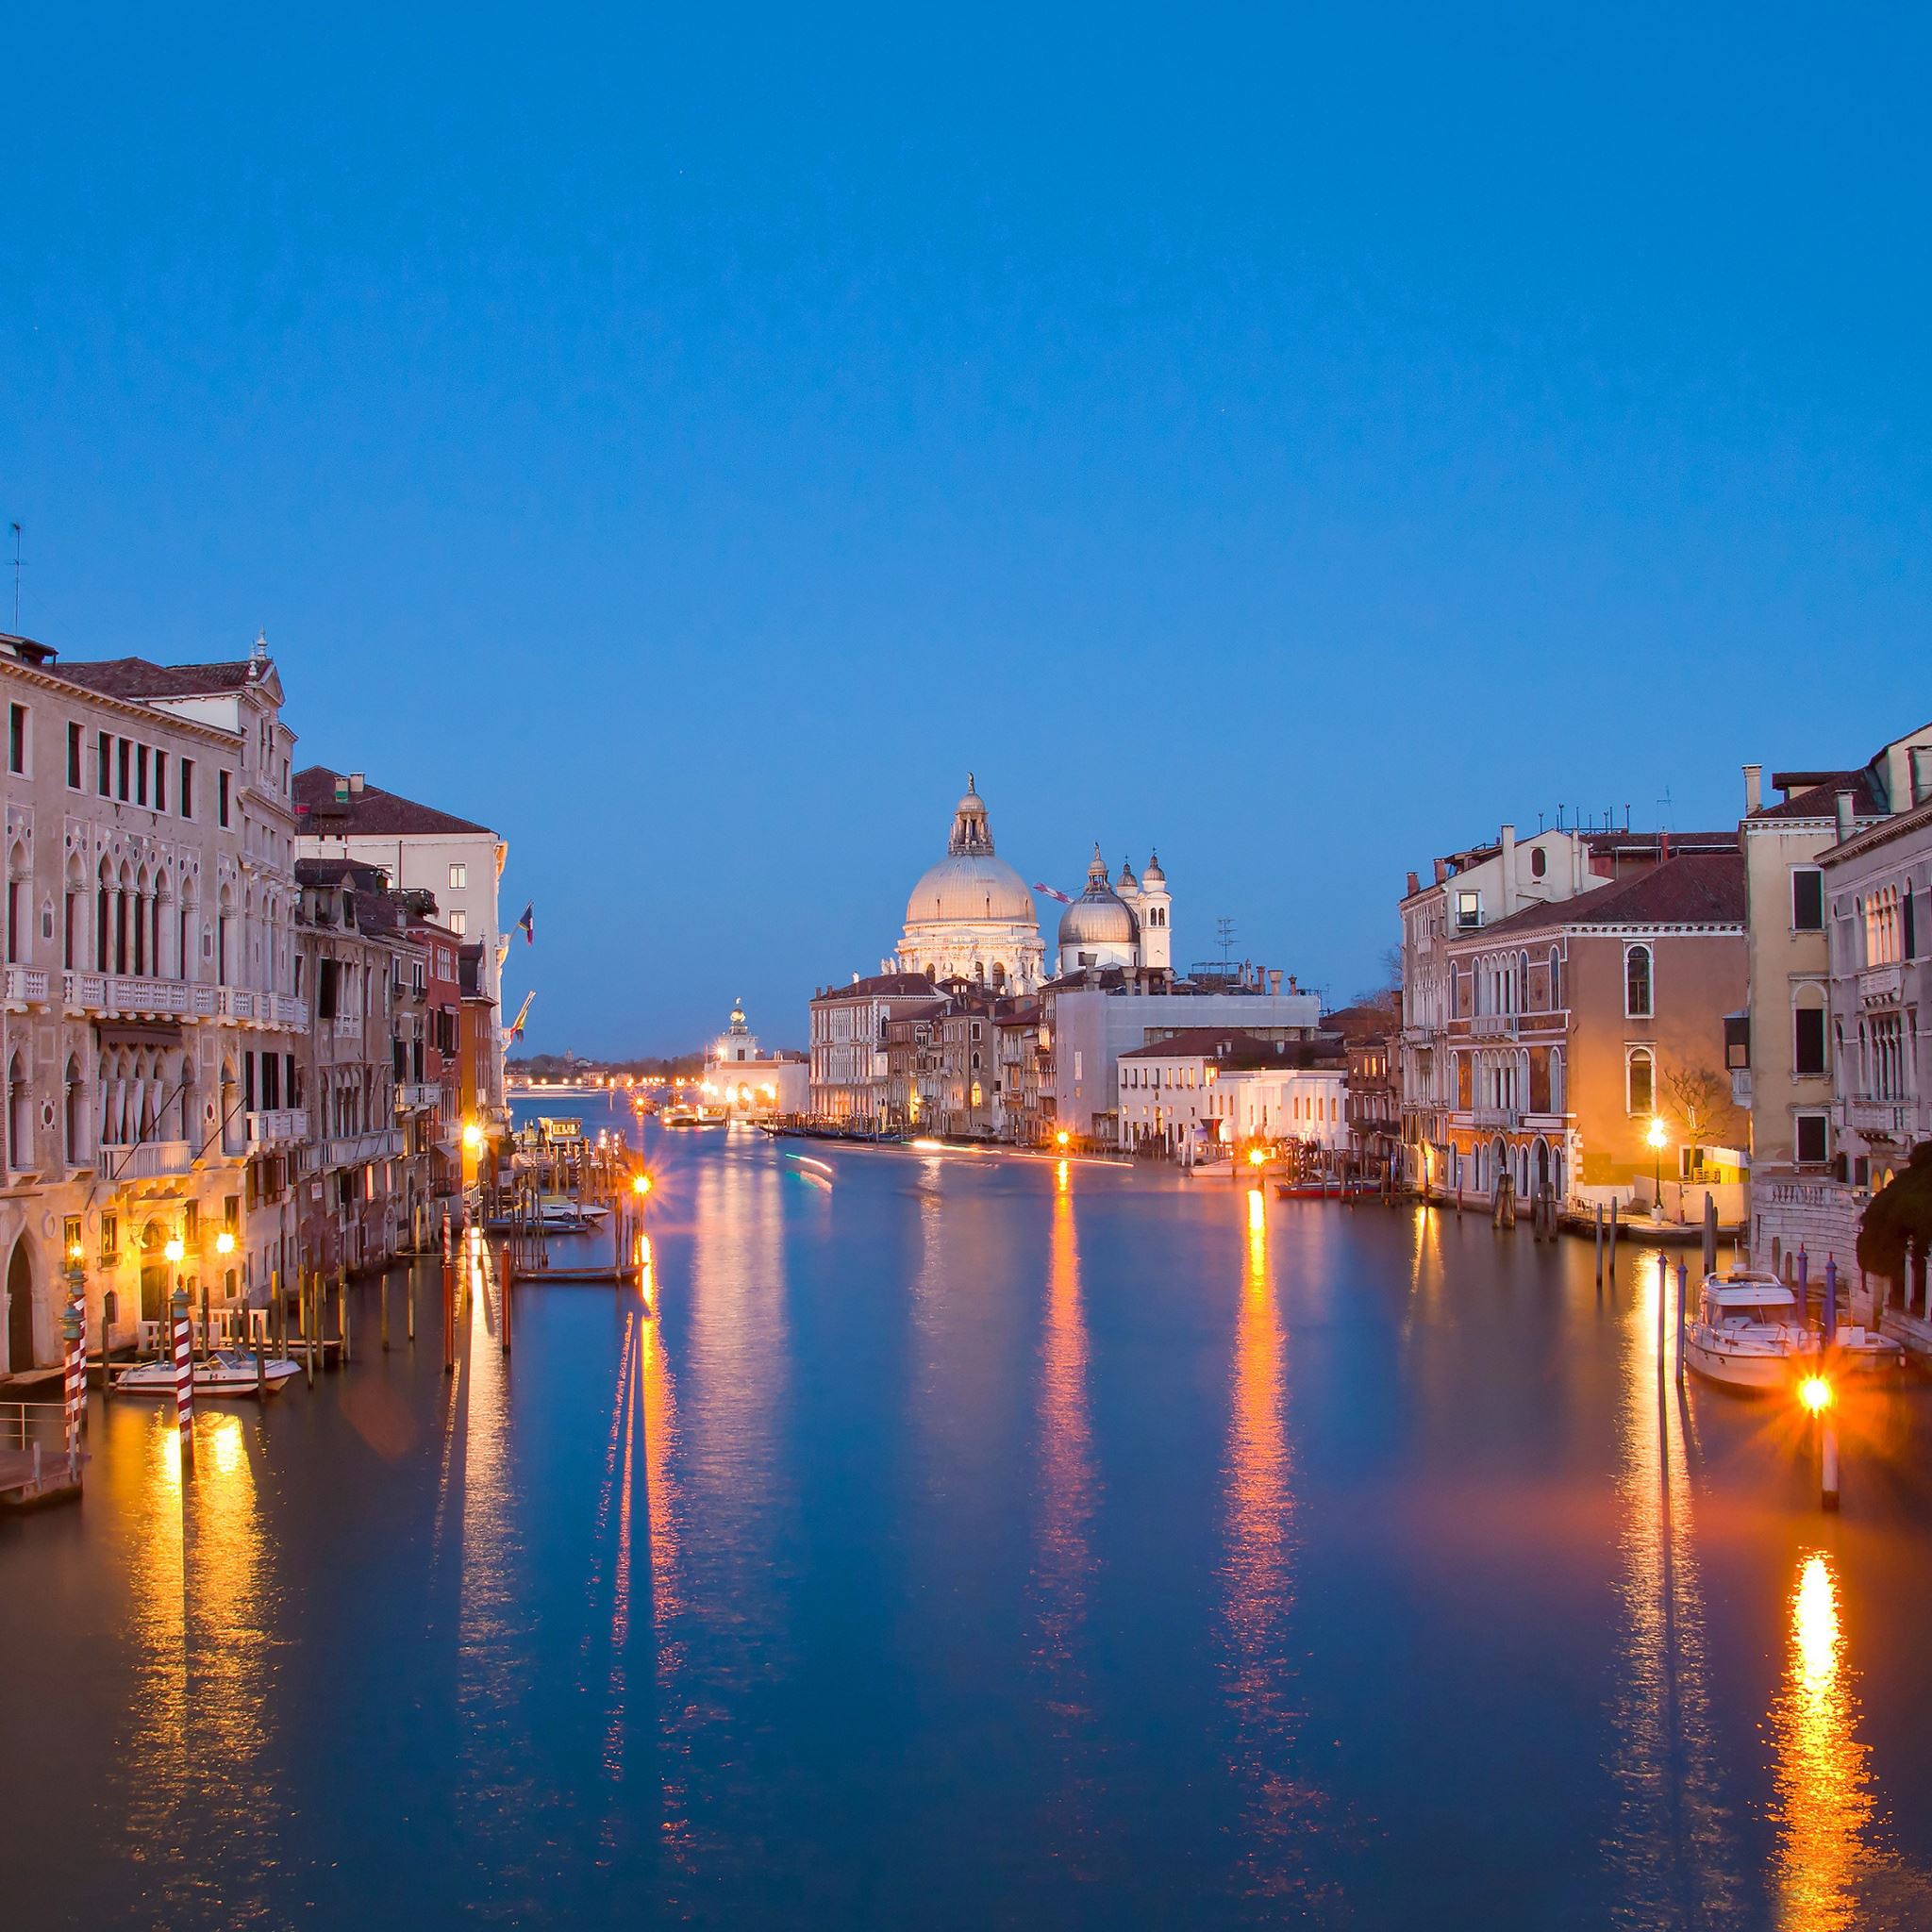 Venice at night iPad Air wallpaper 